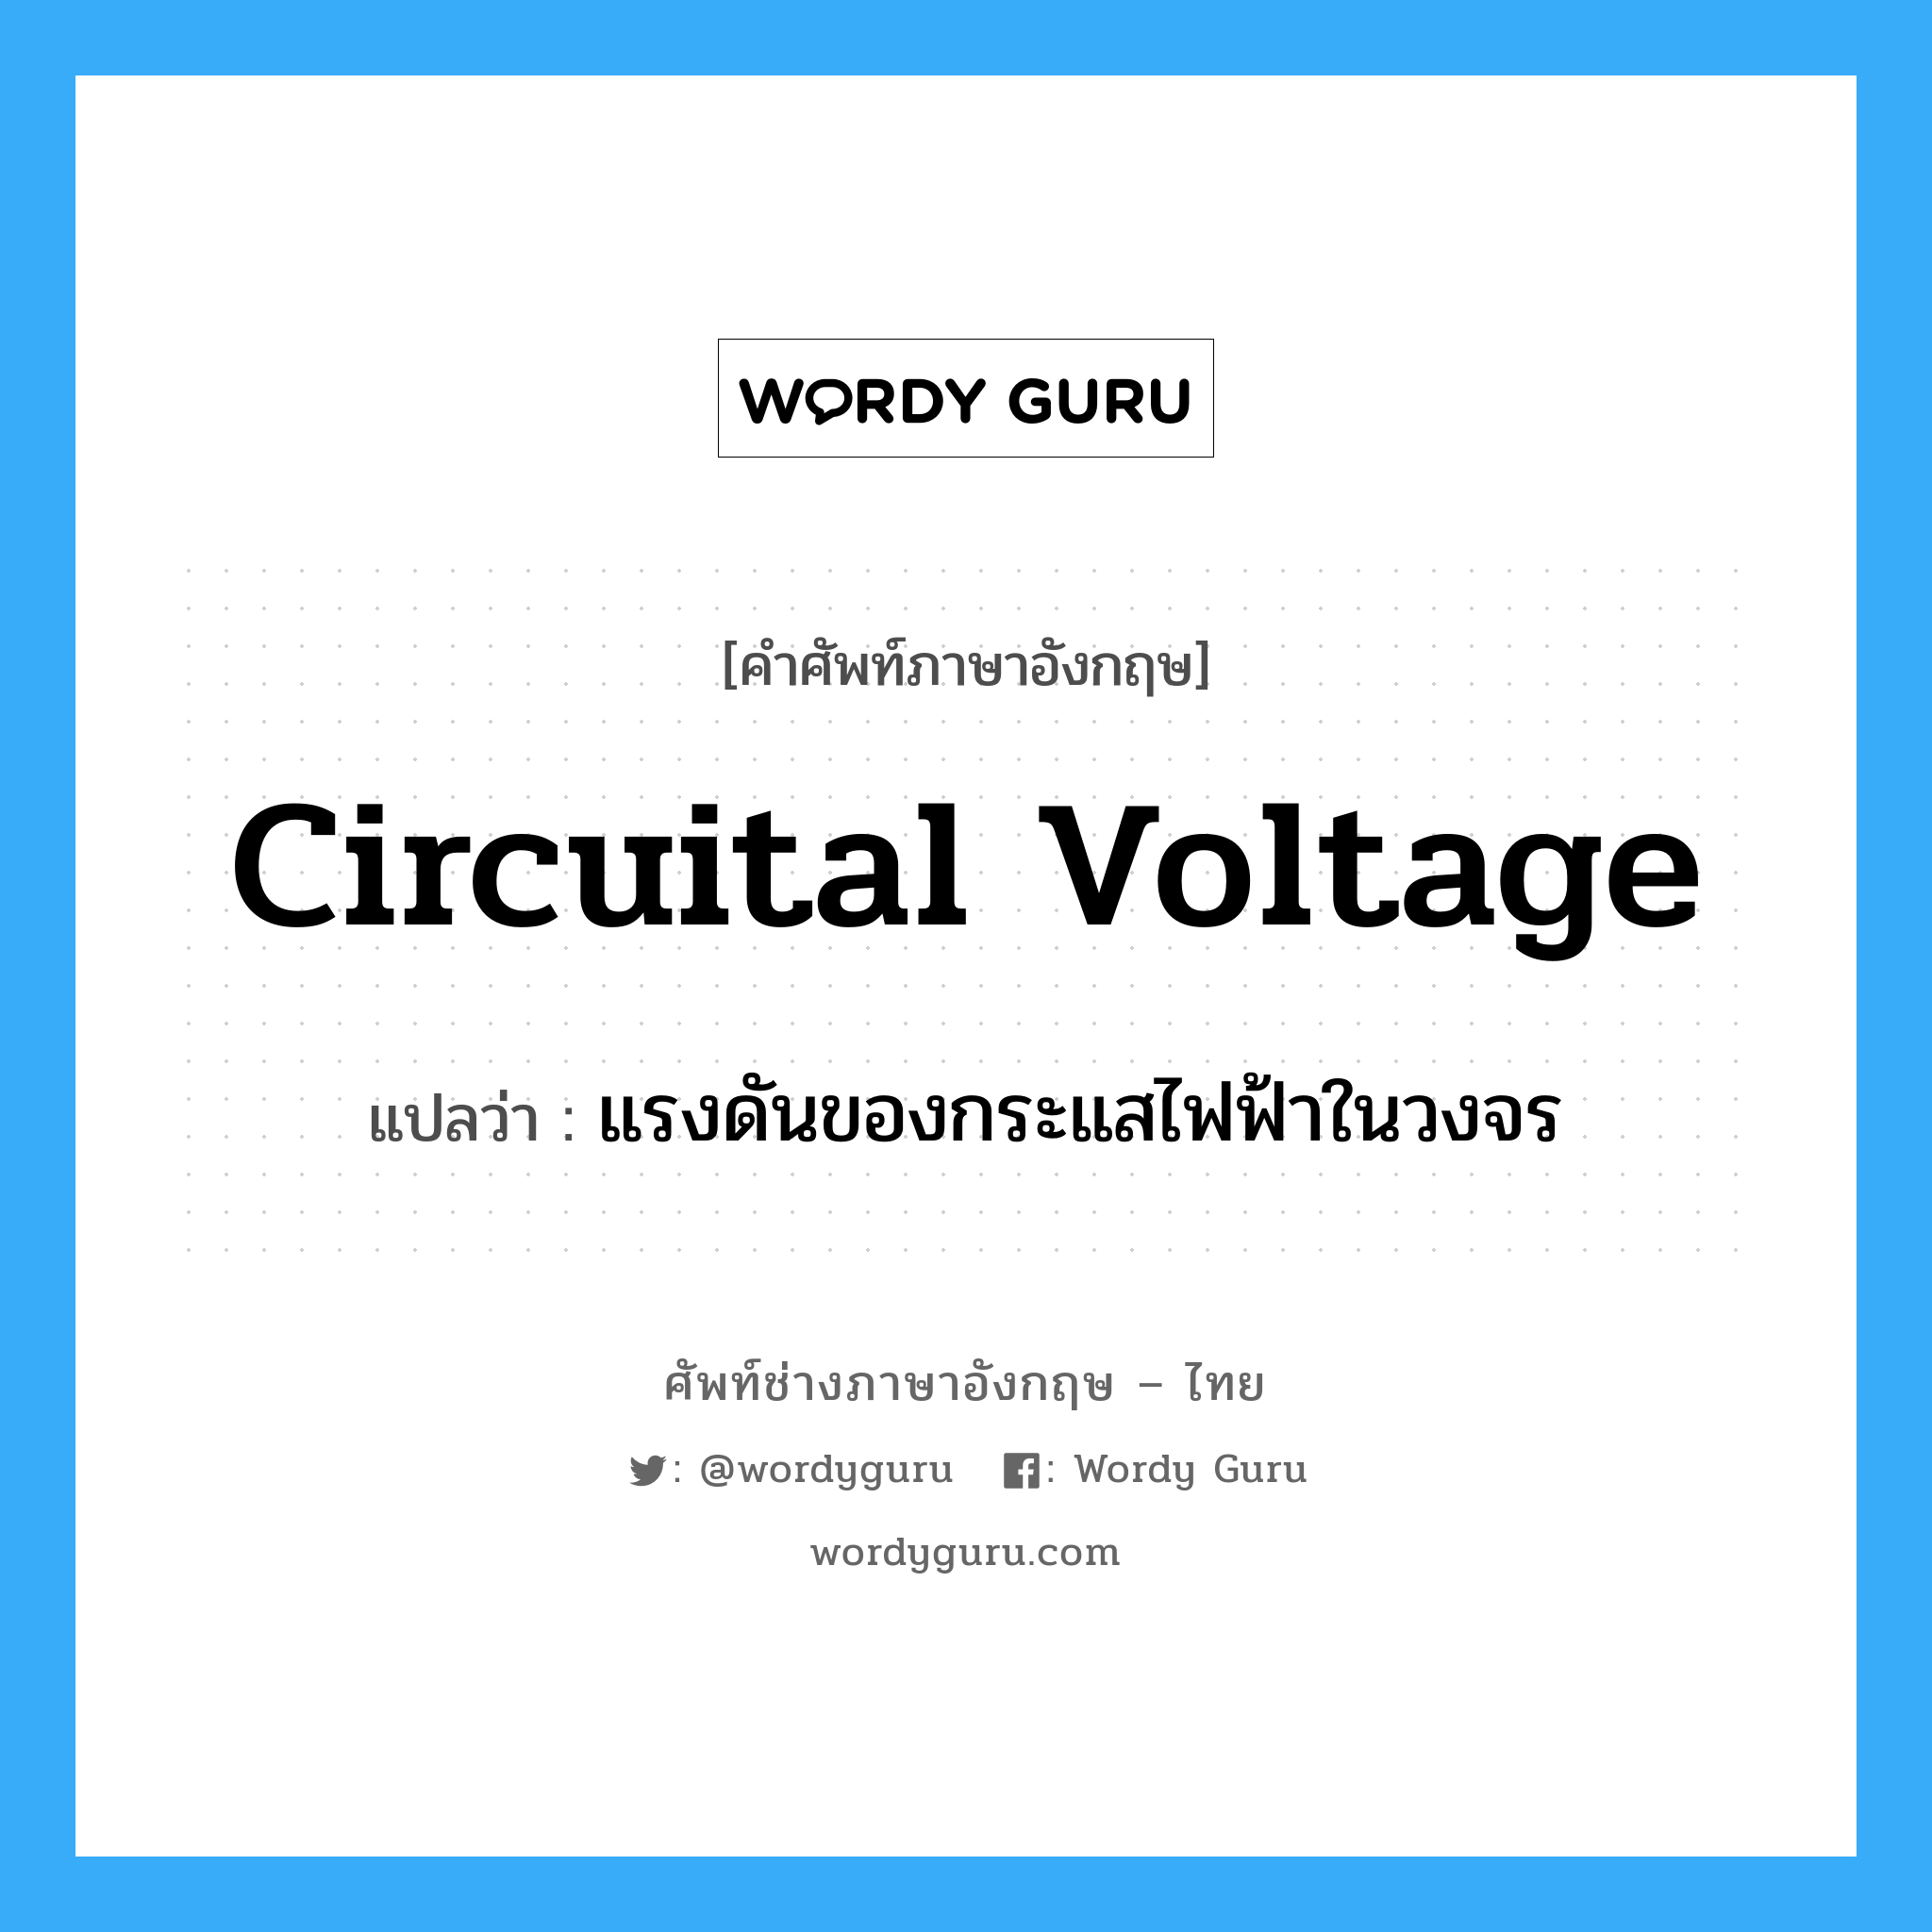 circuital voltage แปลว่า?, คำศัพท์ช่างภาษาอังกฤษ - ไทย circuital voltage คำศัพท์ภาษาอังกฤษ circuital voltage แปลว่า แรงดันของกระแสไฟฟ้าในวงจร